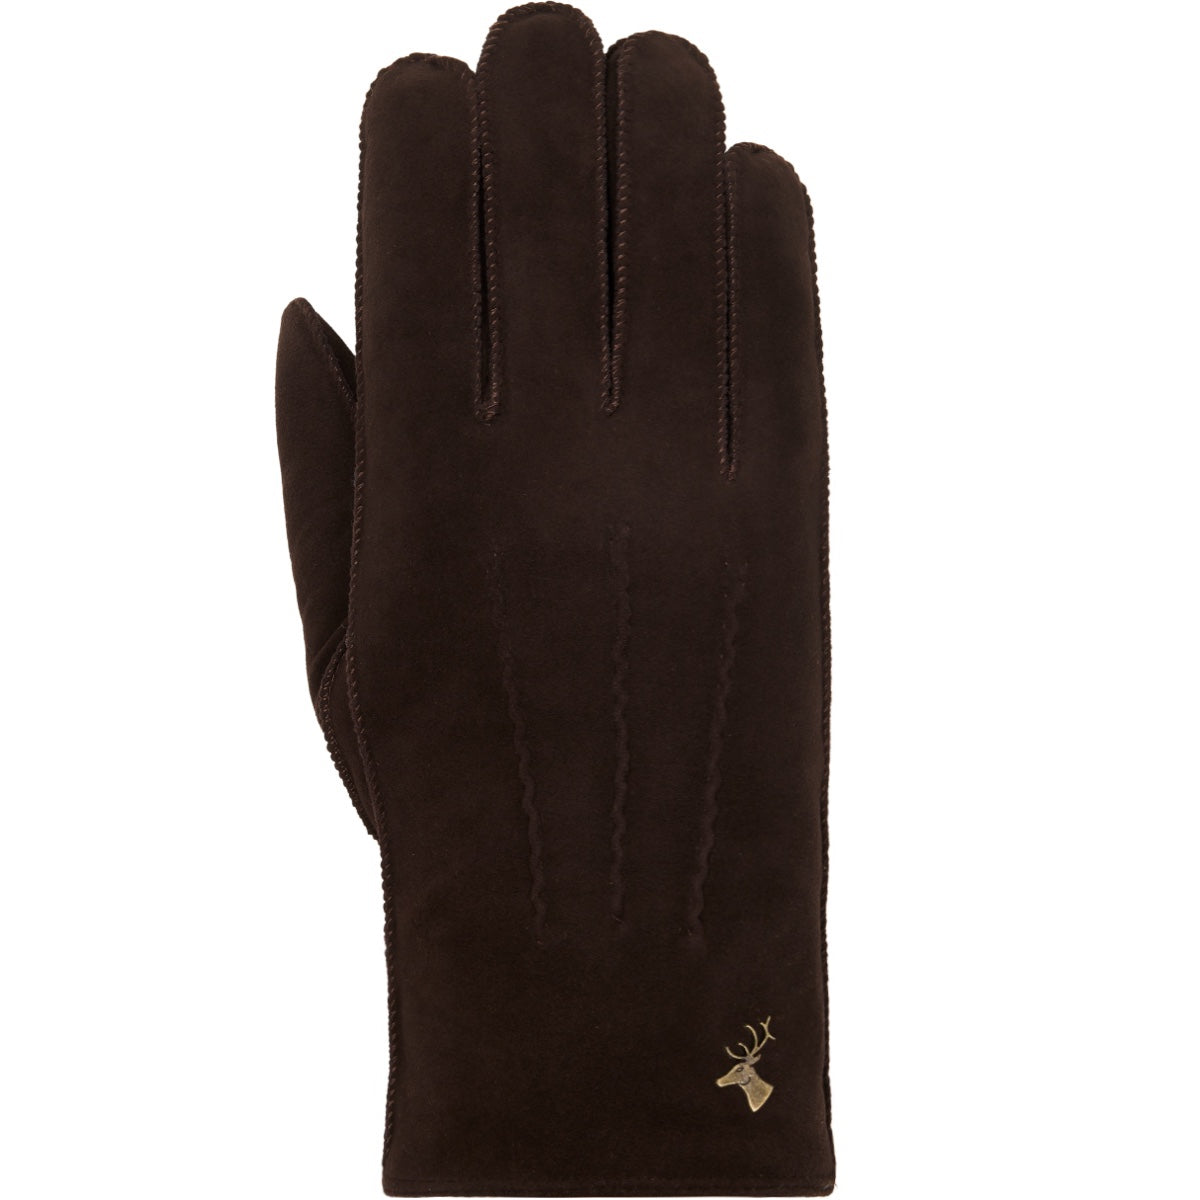 Suede Leather Gloves Brown Matthew - Schwartz & von Halen® - Premium Leather Gloves - 1